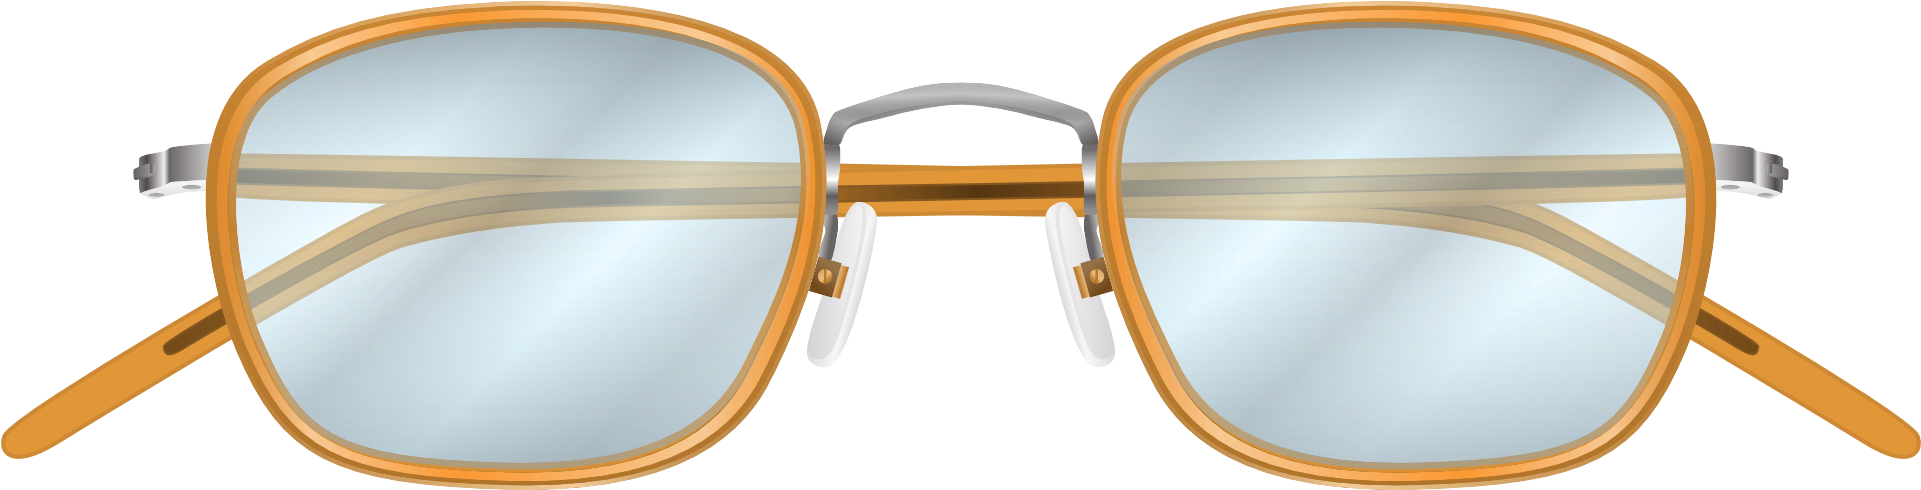 Vintage Round Eyeglasses Transparent Background